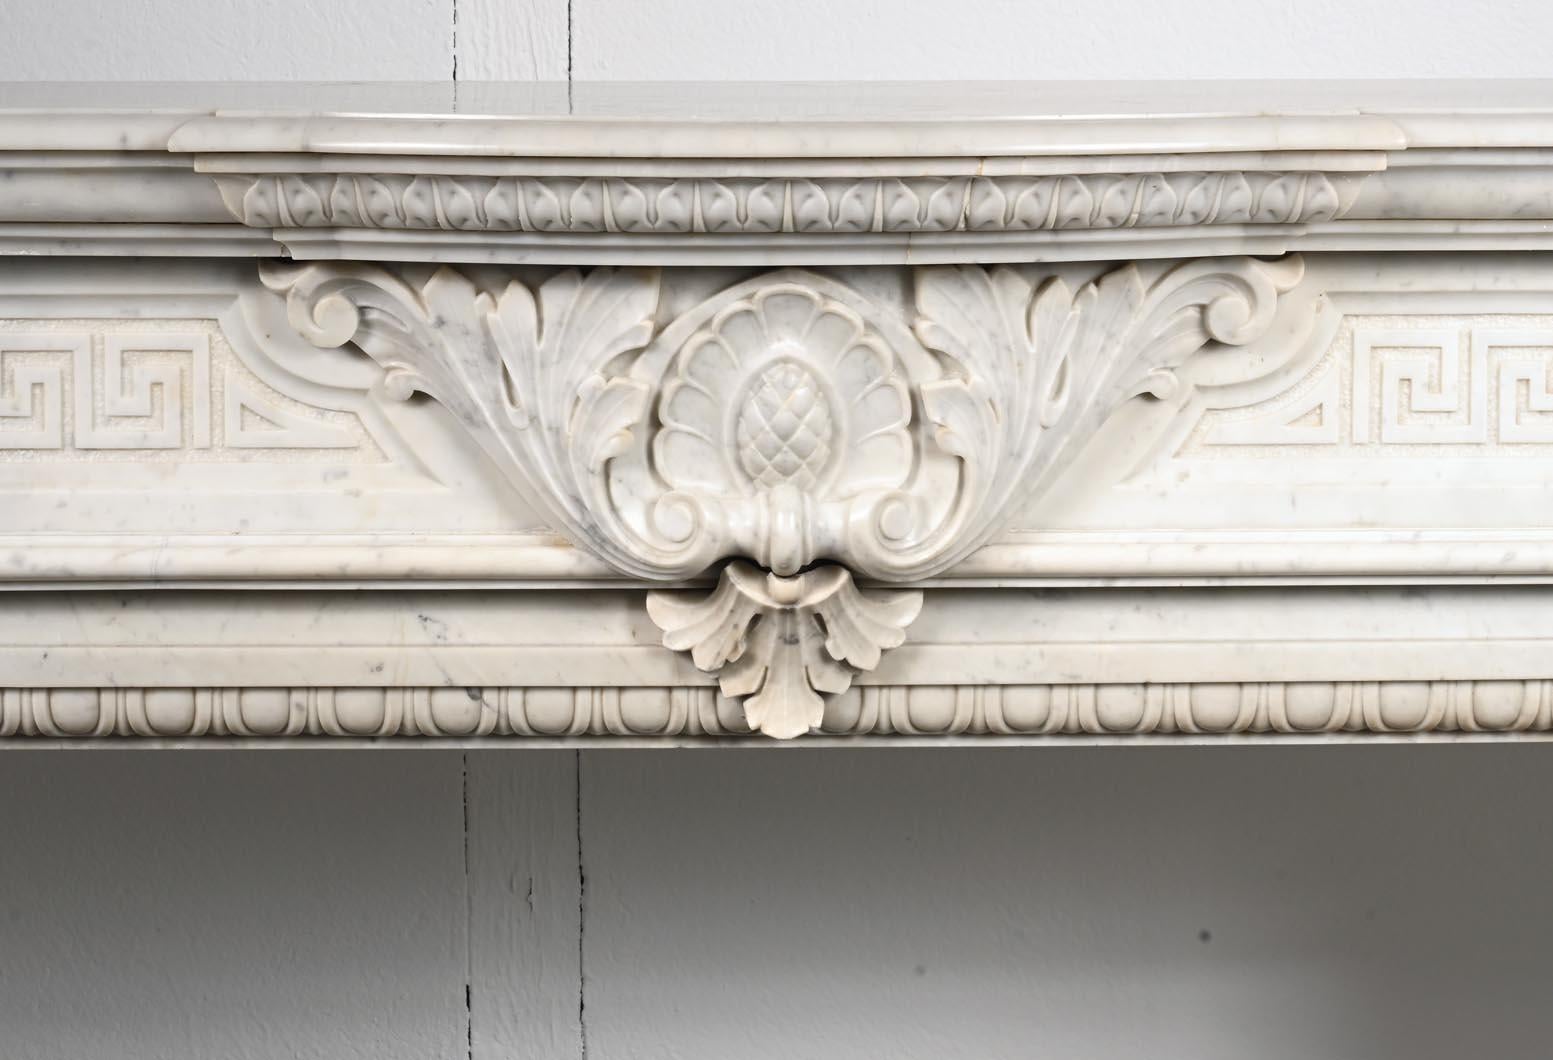 Dieser Kaminsims im Stil Napoleons III. wurde im 19. Jahrhundert aus Carrara-Marmor gefertigt. Die Mitte des Türsturzes ist mit einem großen Pflanzenmuster verziert, das eine stilisierte Zeichnung einer Blume umgibt. Auf beiden Seiten befindet sich